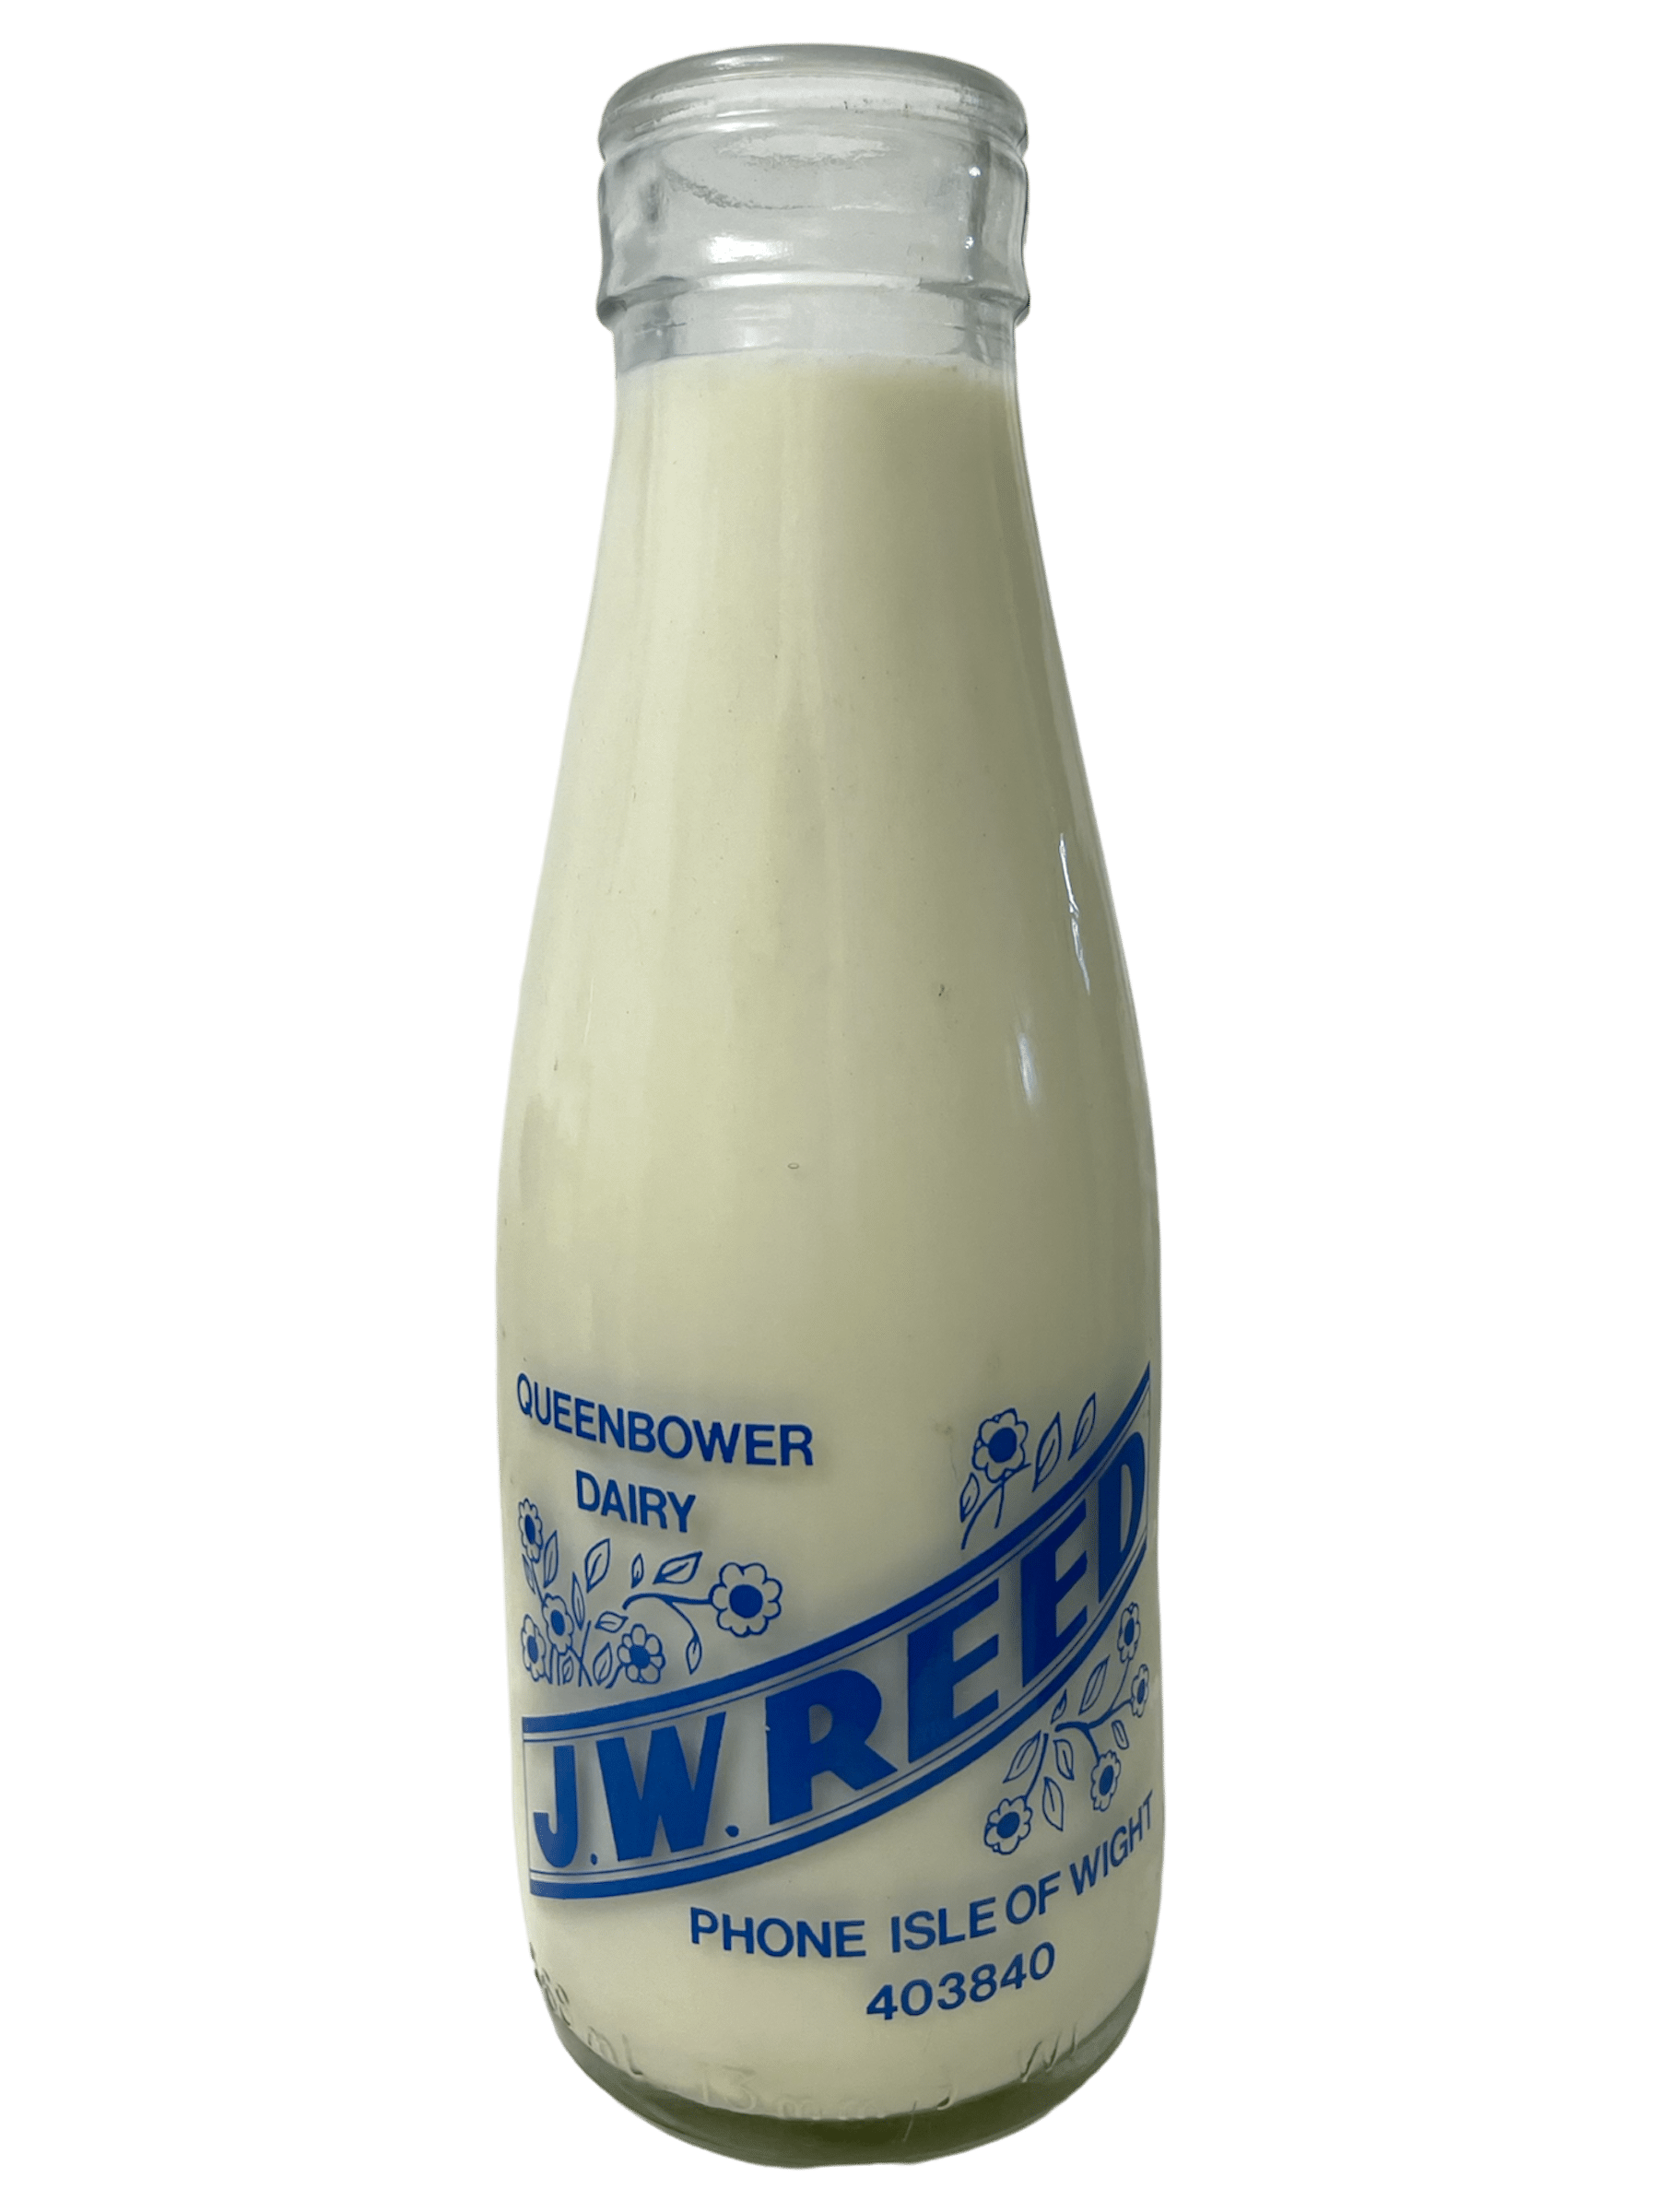 Queen Bower Dairy J W Reed - www.Kelis.info #KelisTheBottleBank